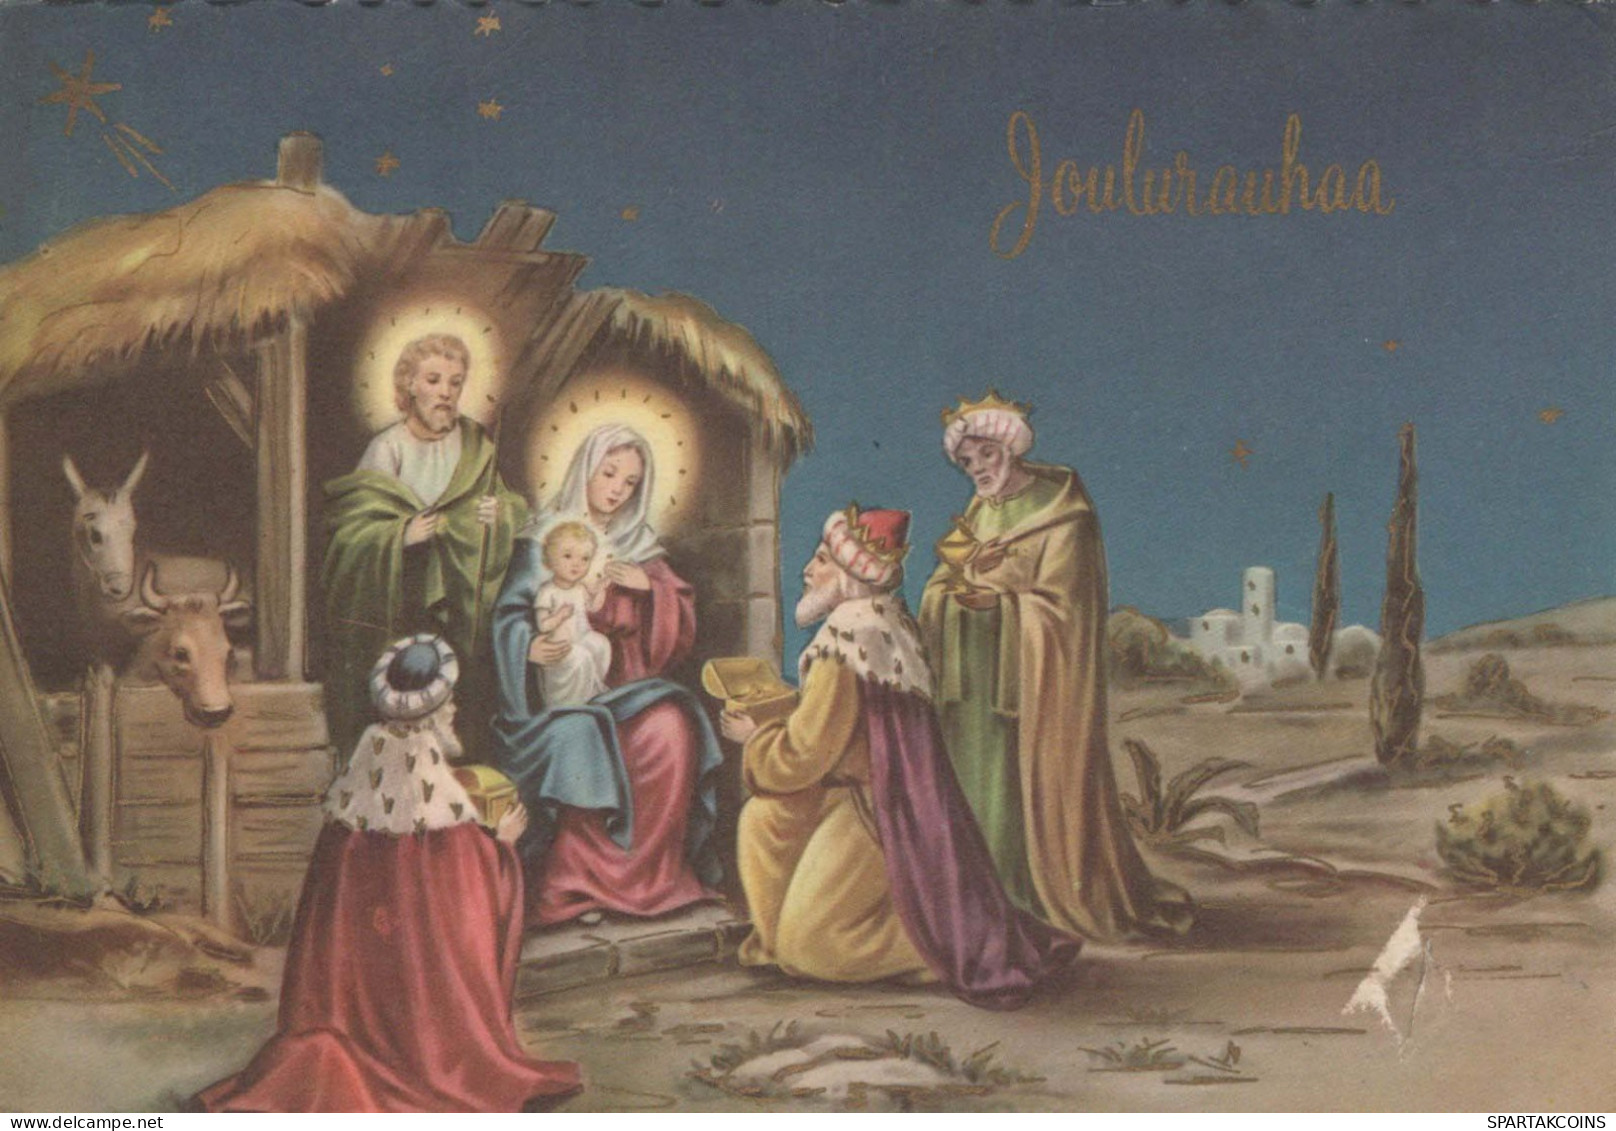 Jungfrau Maria Madonna Jesuskind Weihnachten Religion Vintage Ansichtskarte Postkarte CPSM #PBB617.DE - Virgen Maria Y Las Madonnas